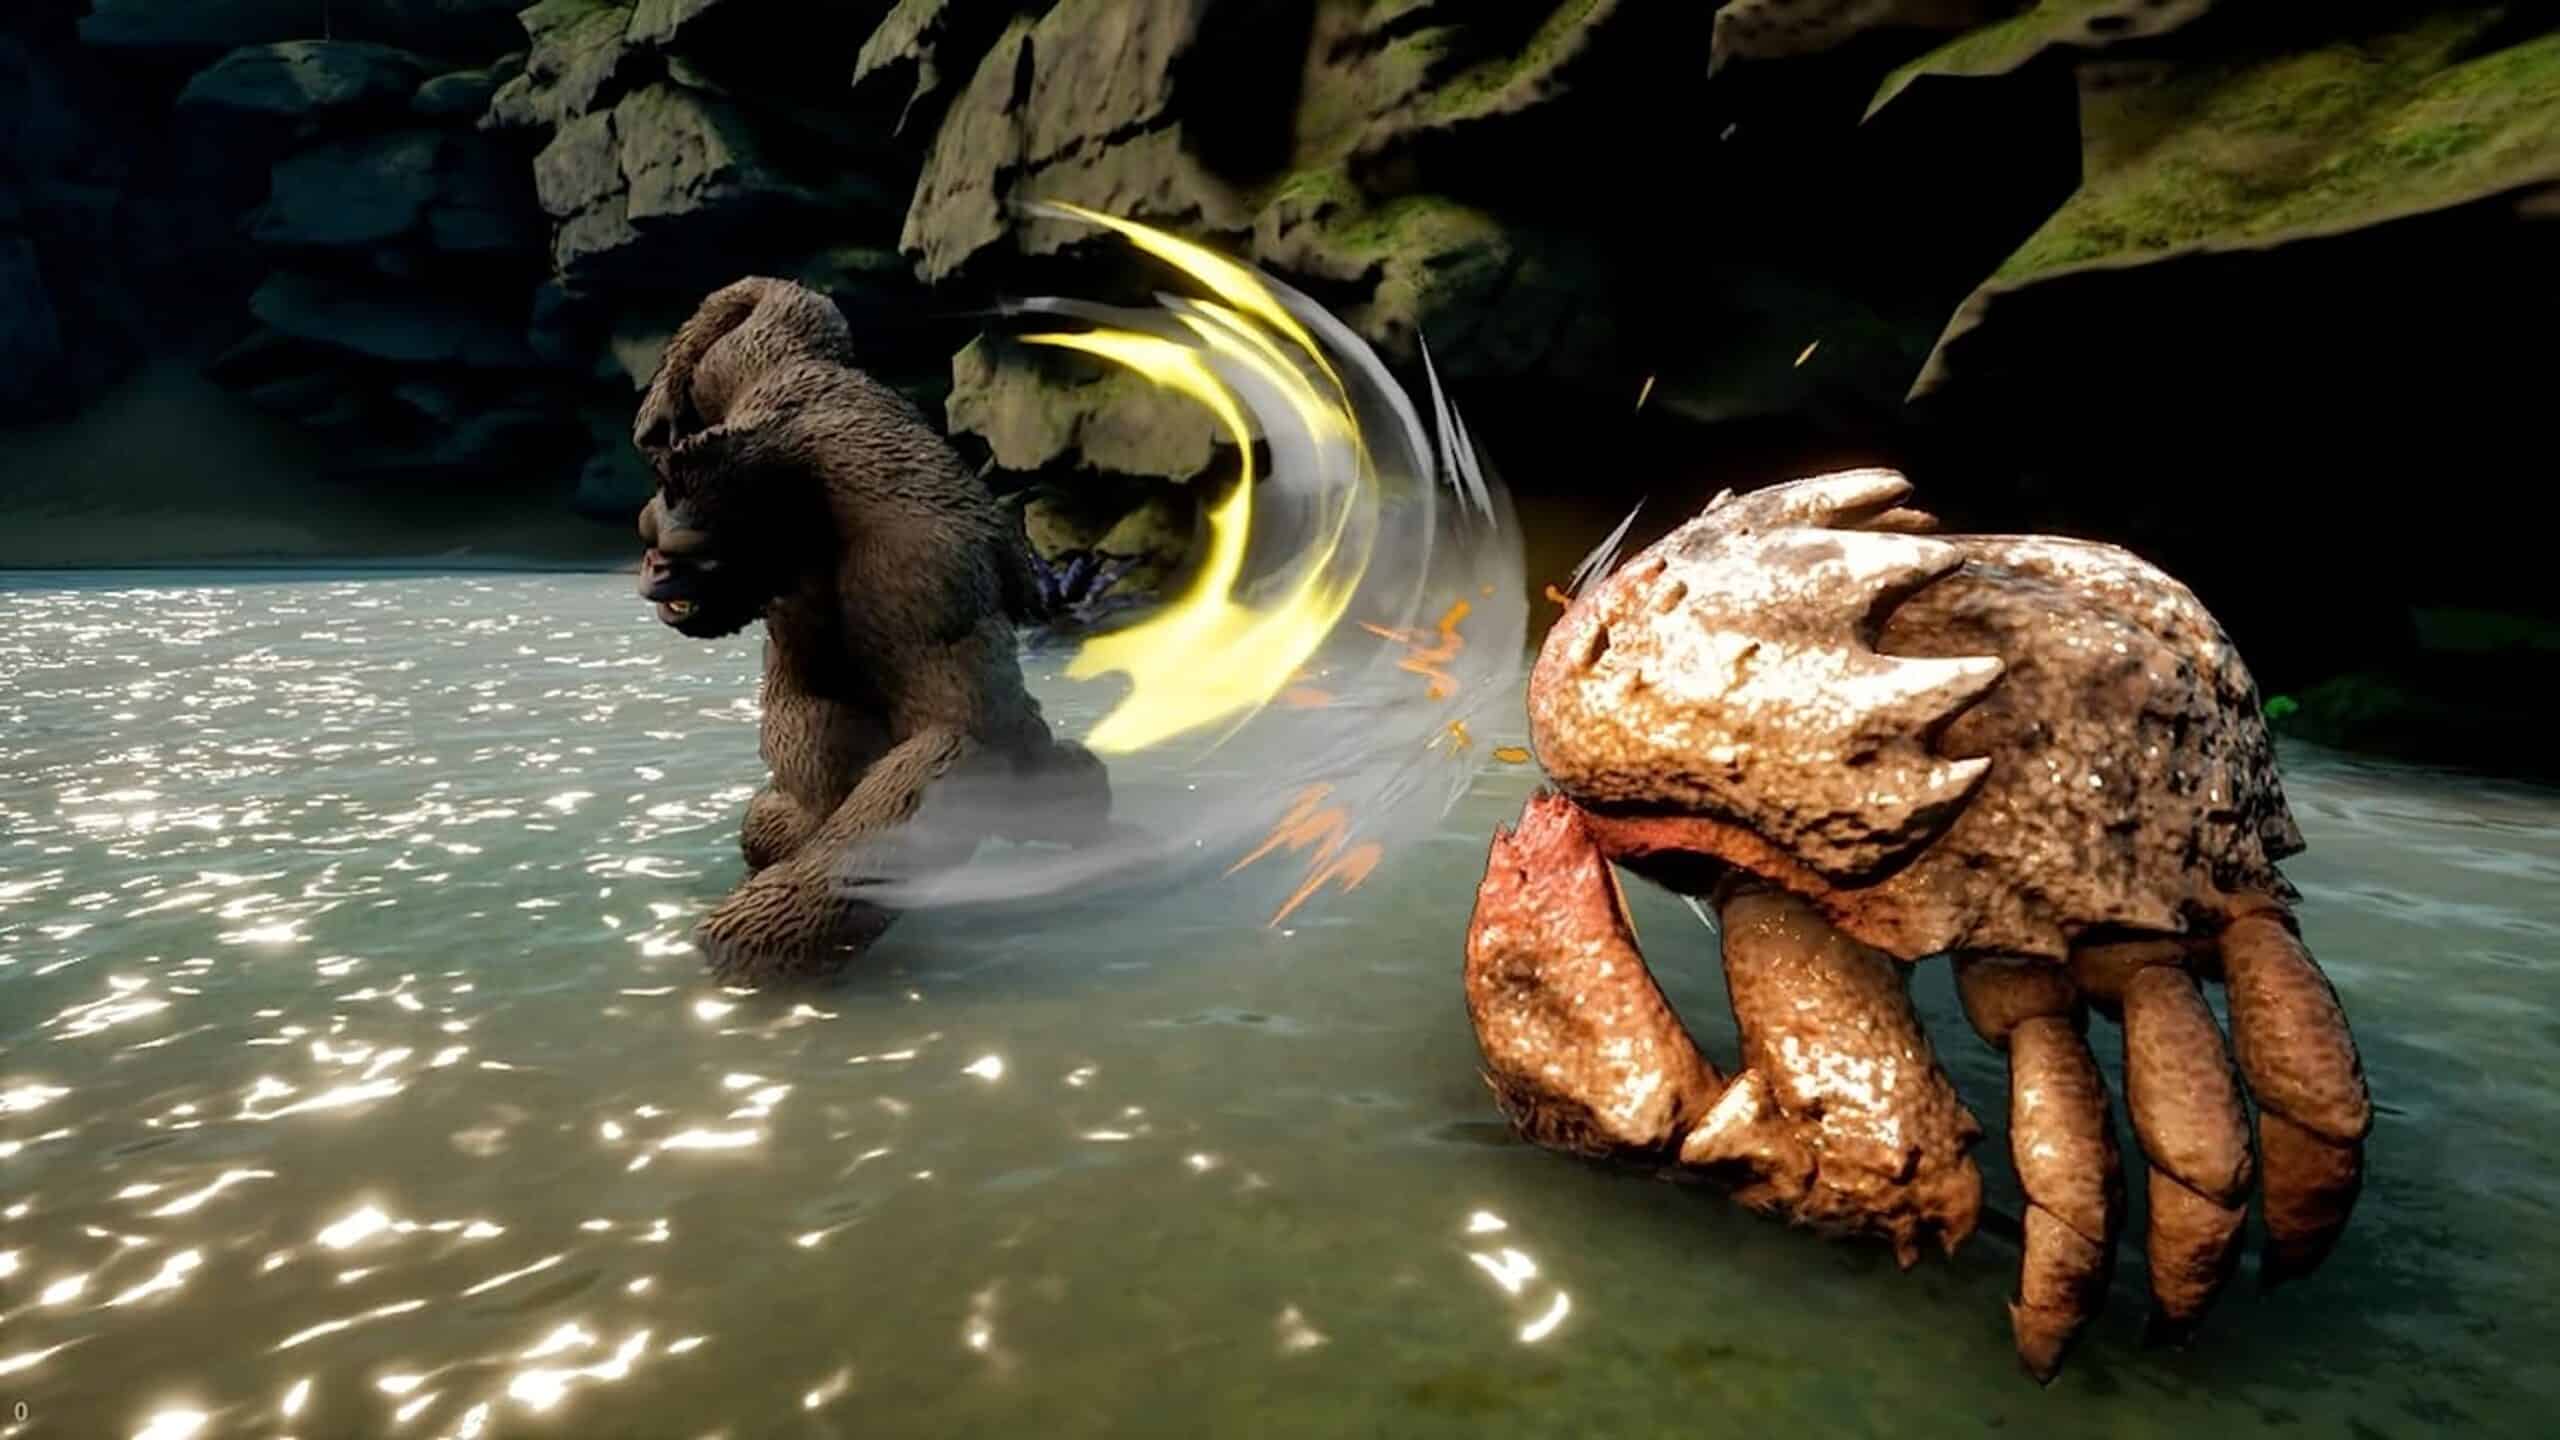 gorilla punching a crab